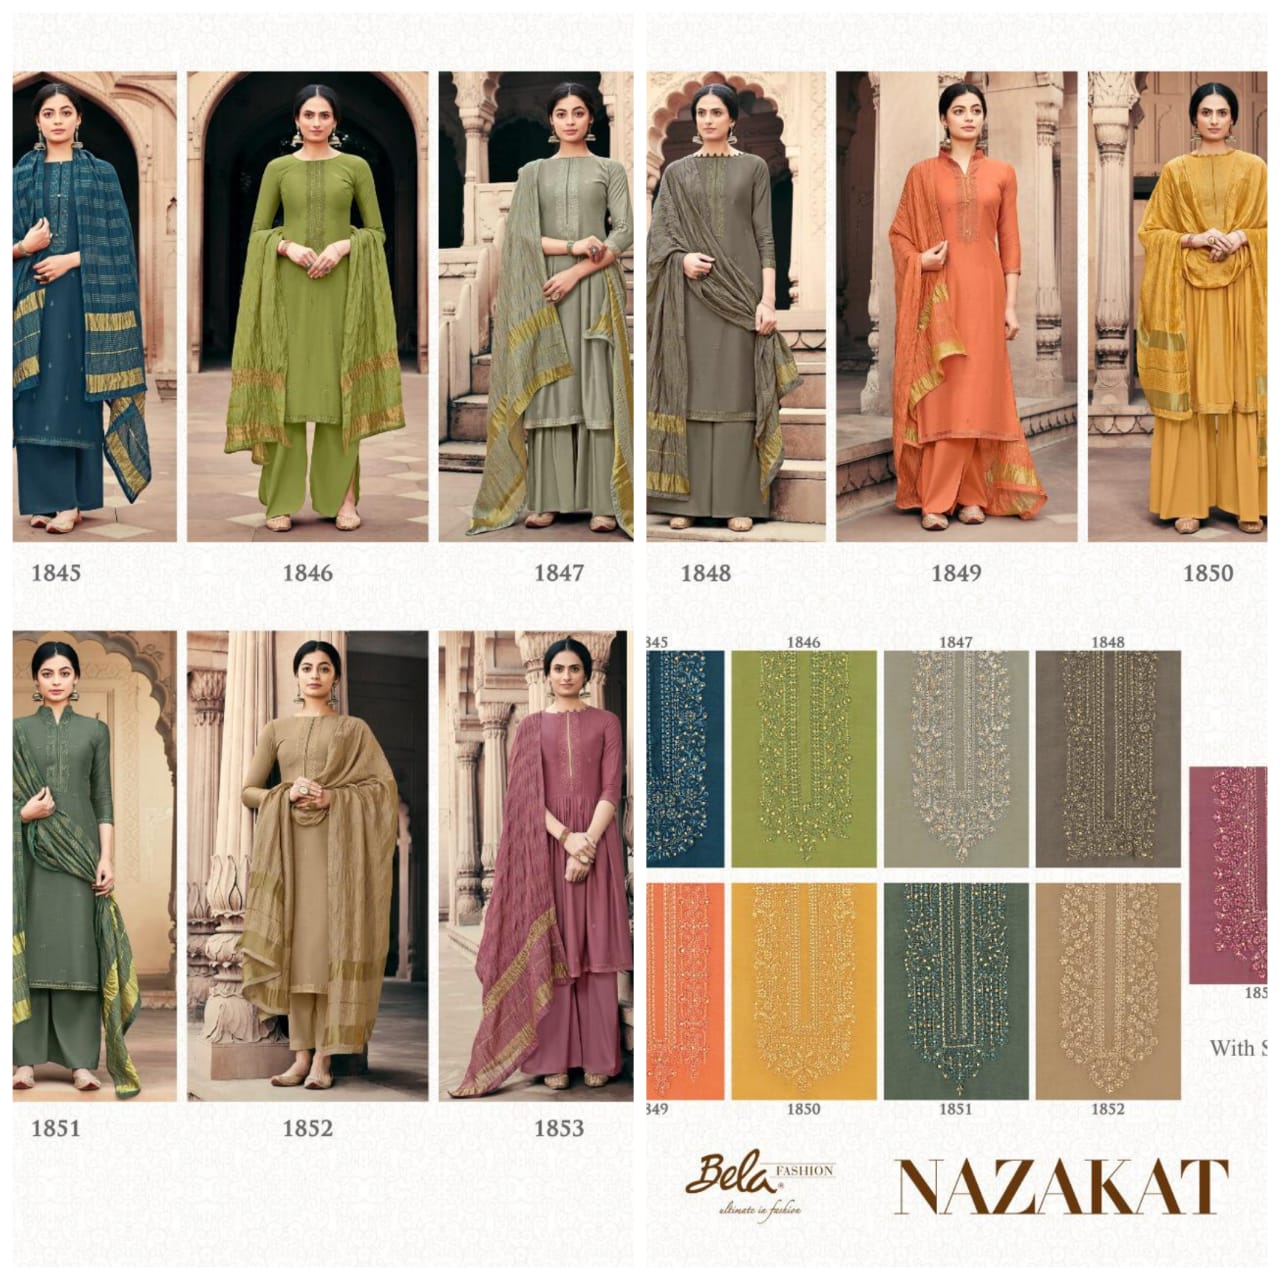 Bela Fashion Nazakat 1845-1853